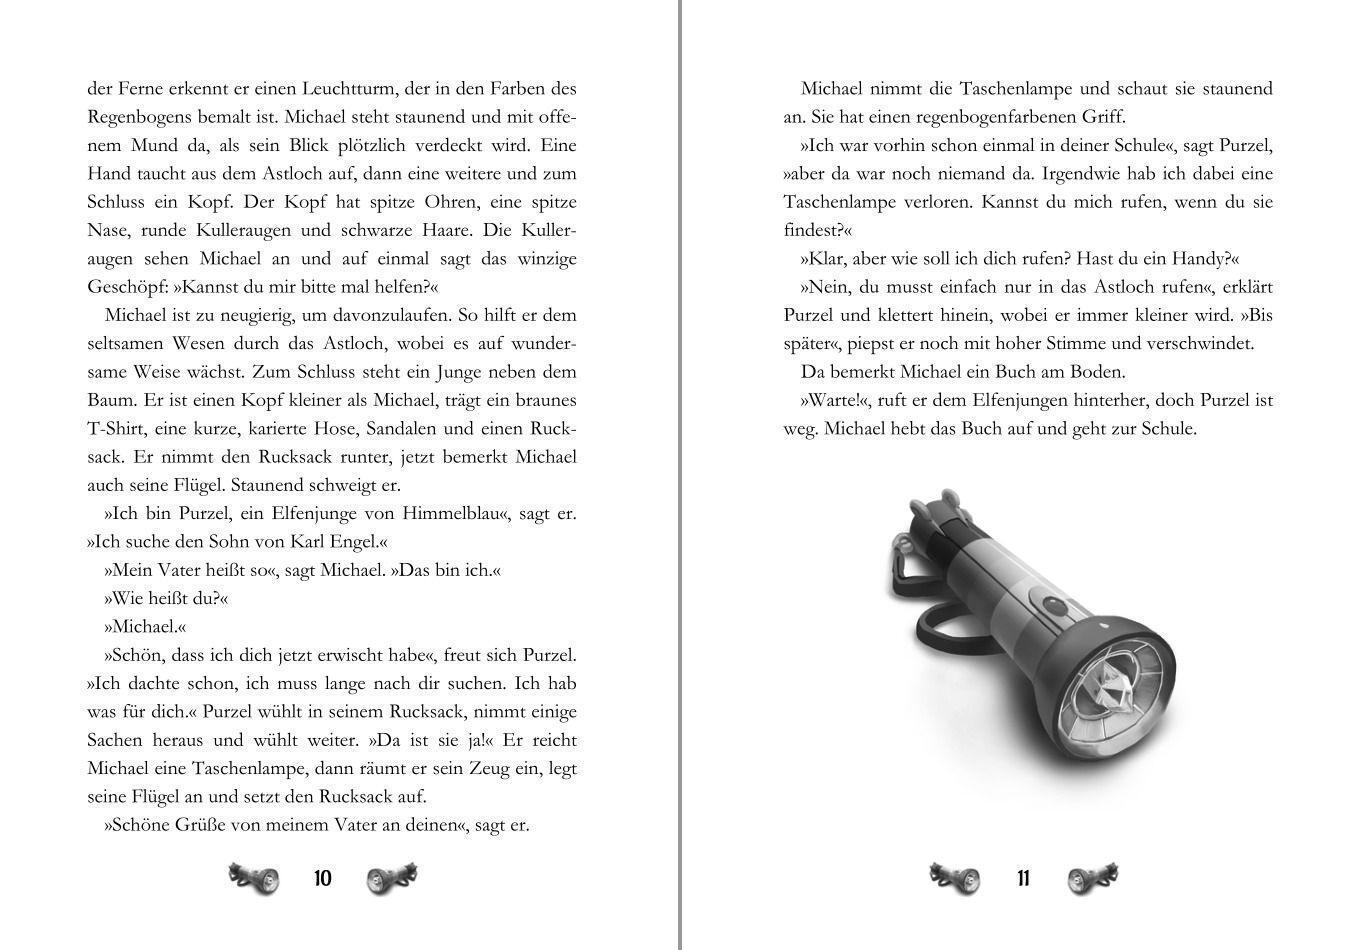 Bild: 9783944626604 | Leuchtturm der Abenteuer Trilogie 1 Freunde in Gefahr - Kinderbuch...